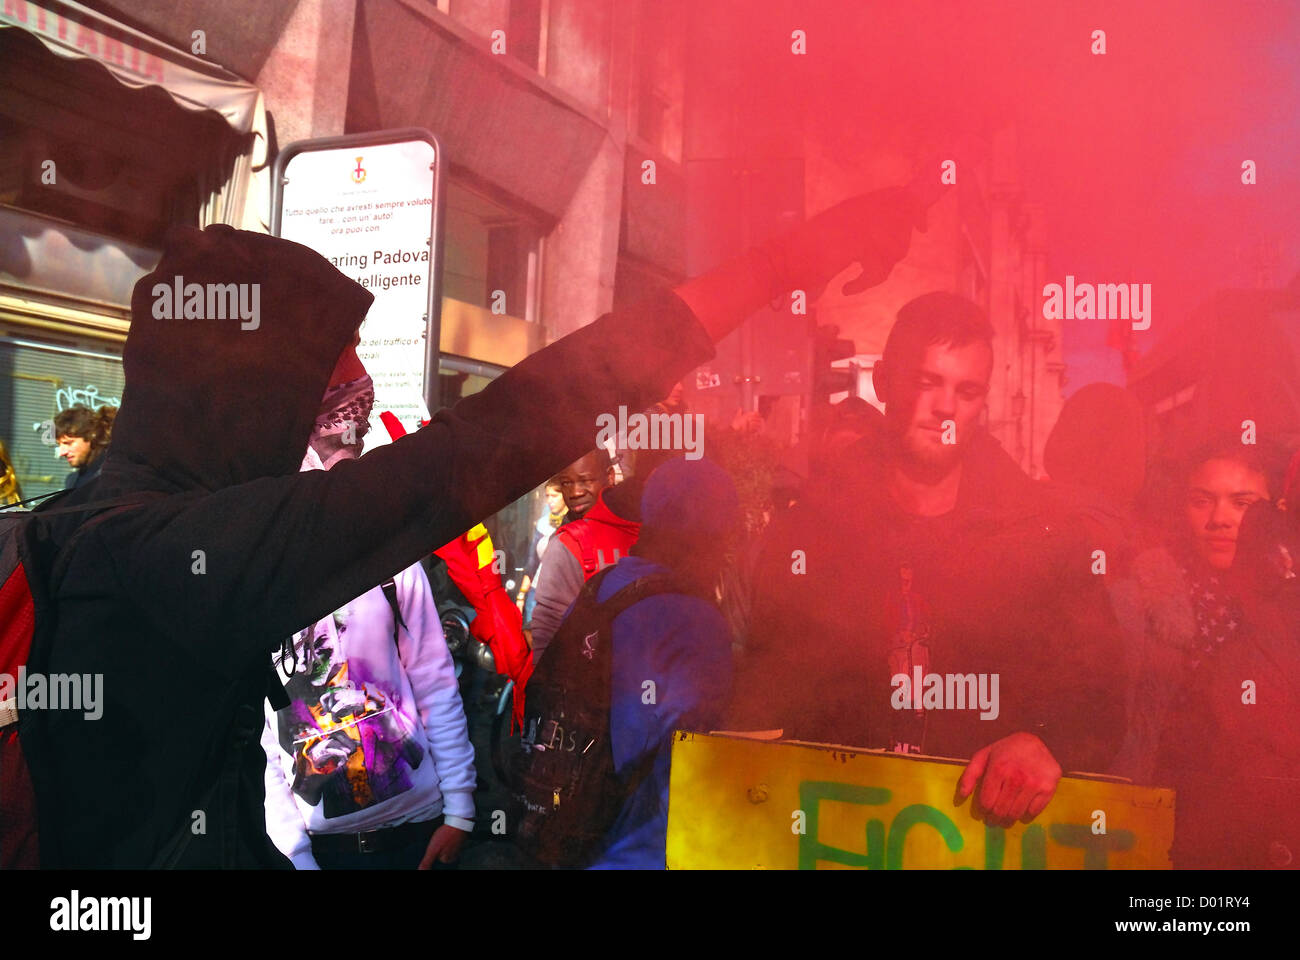 Padova, Italia, 14 Novembre 2012 : Europeo sciopero generale. Scontri con poliziotti. Foto Stock